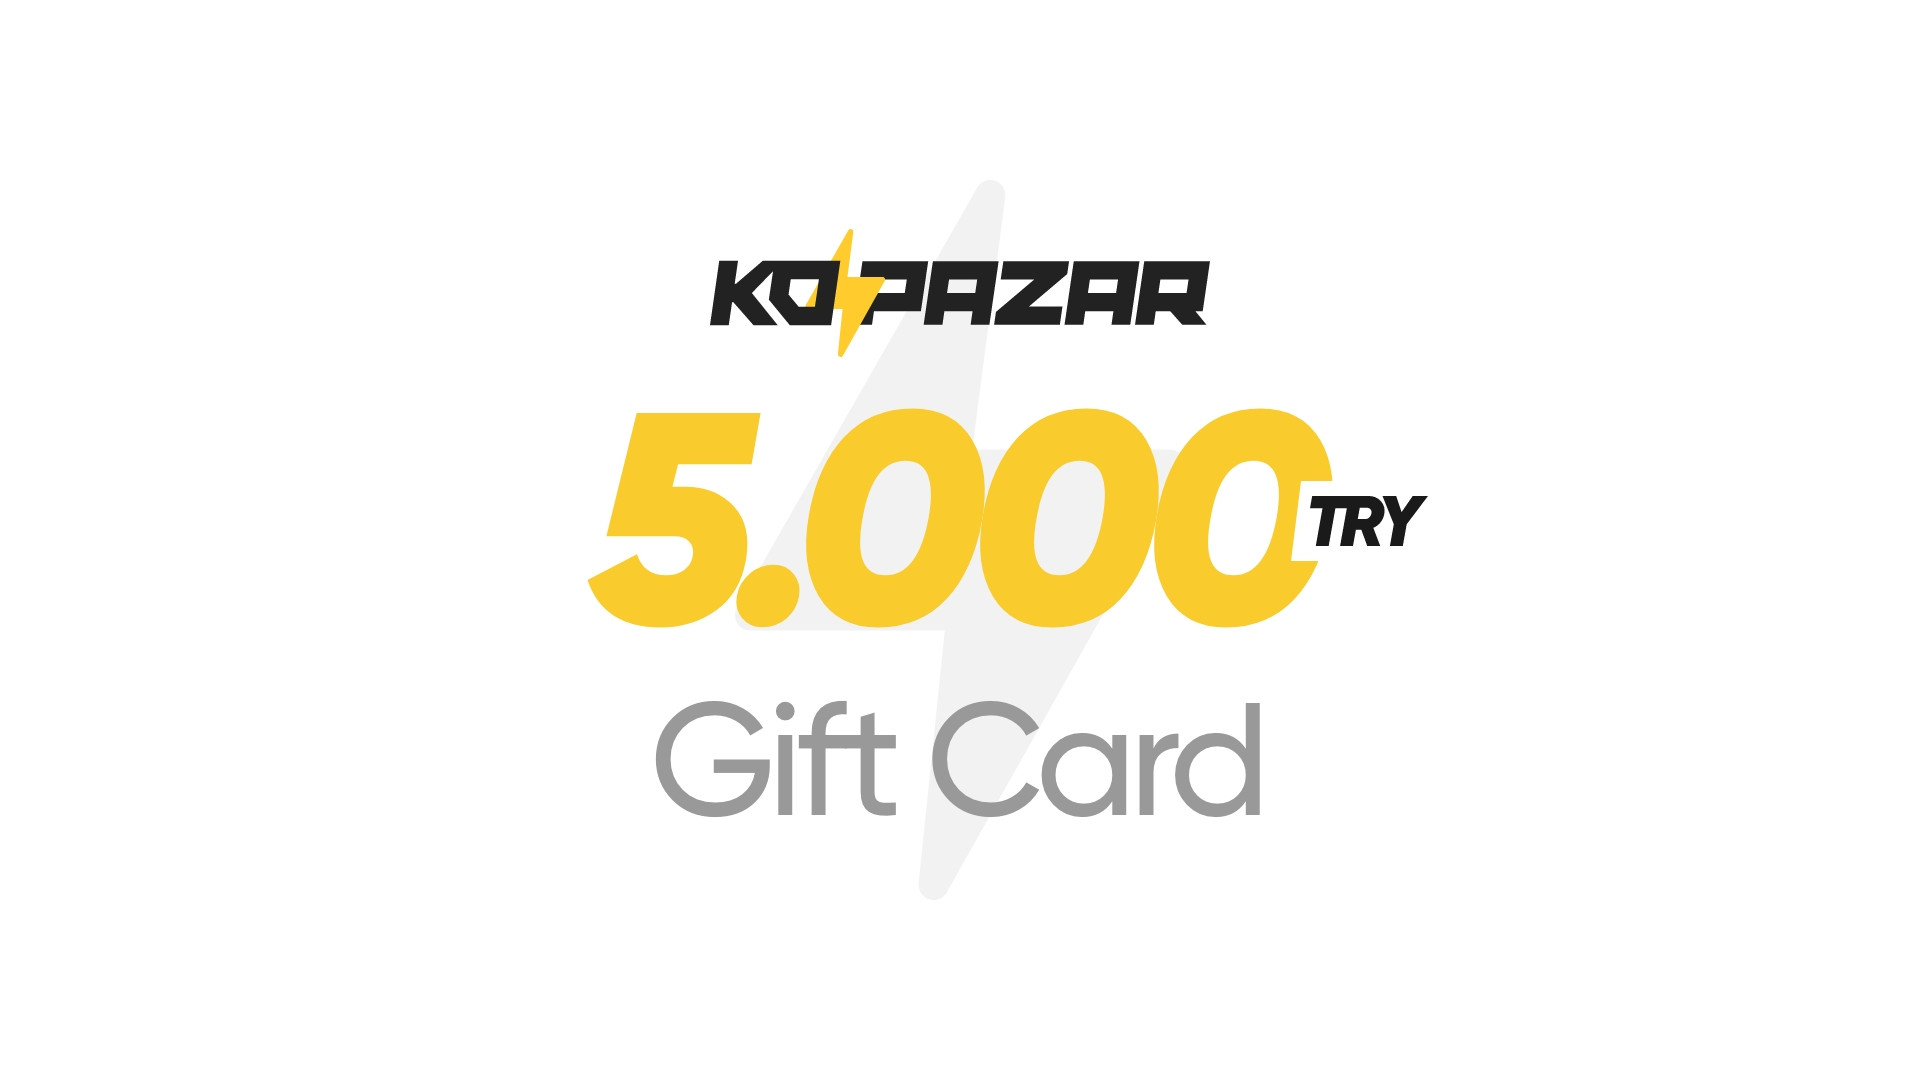 Kopazar 5000 TRY Gift Card